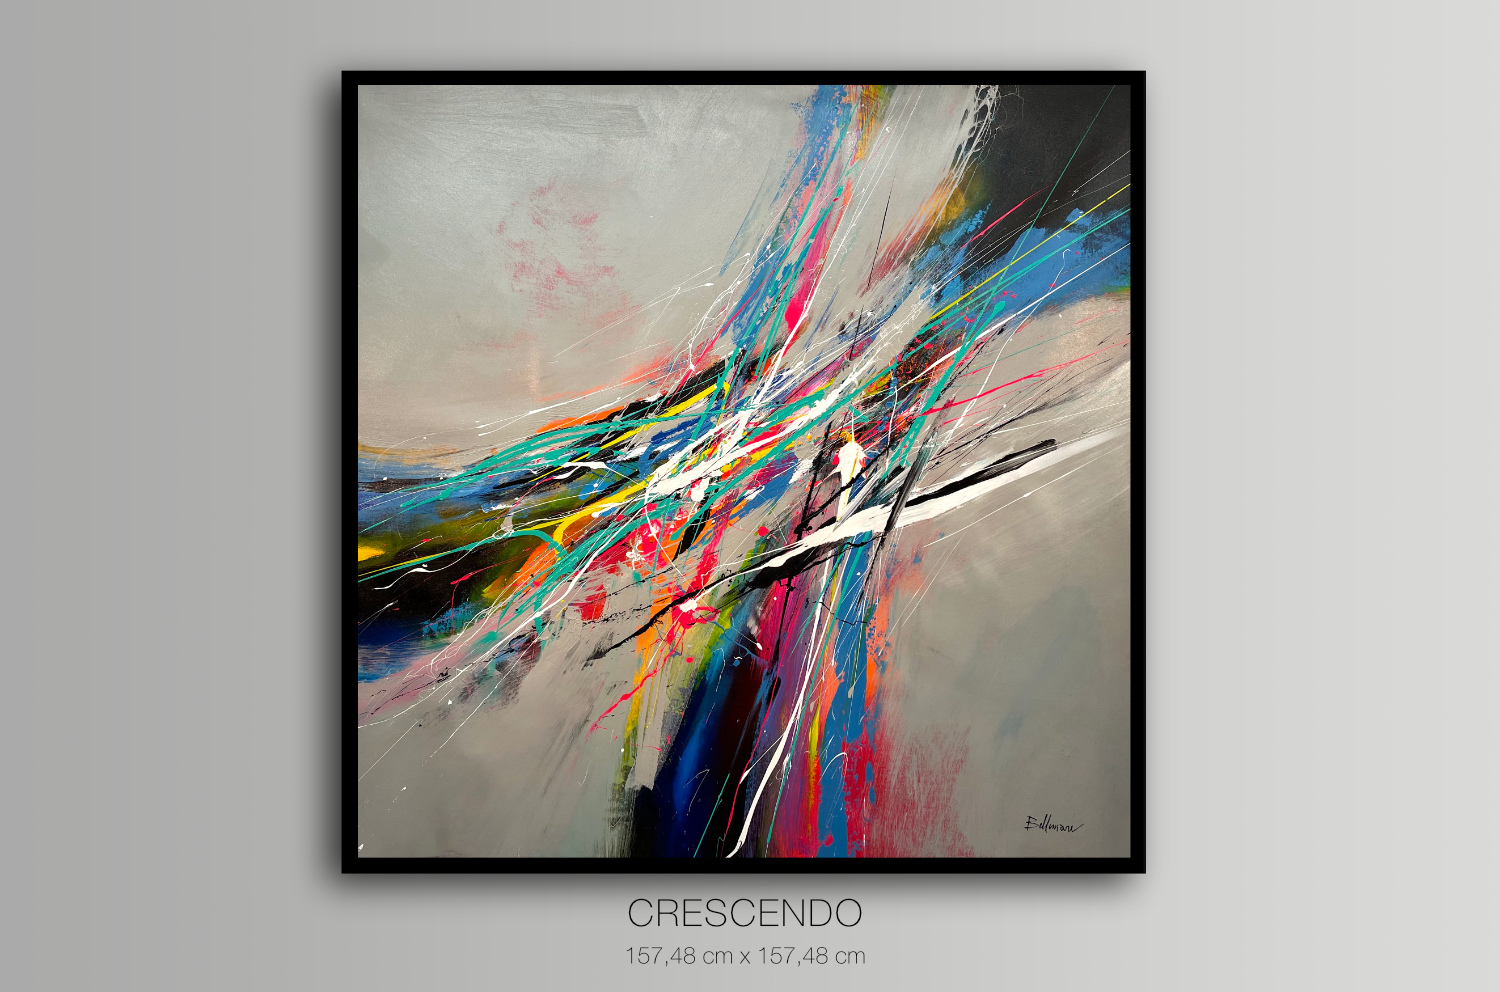 Crescendo - Featured